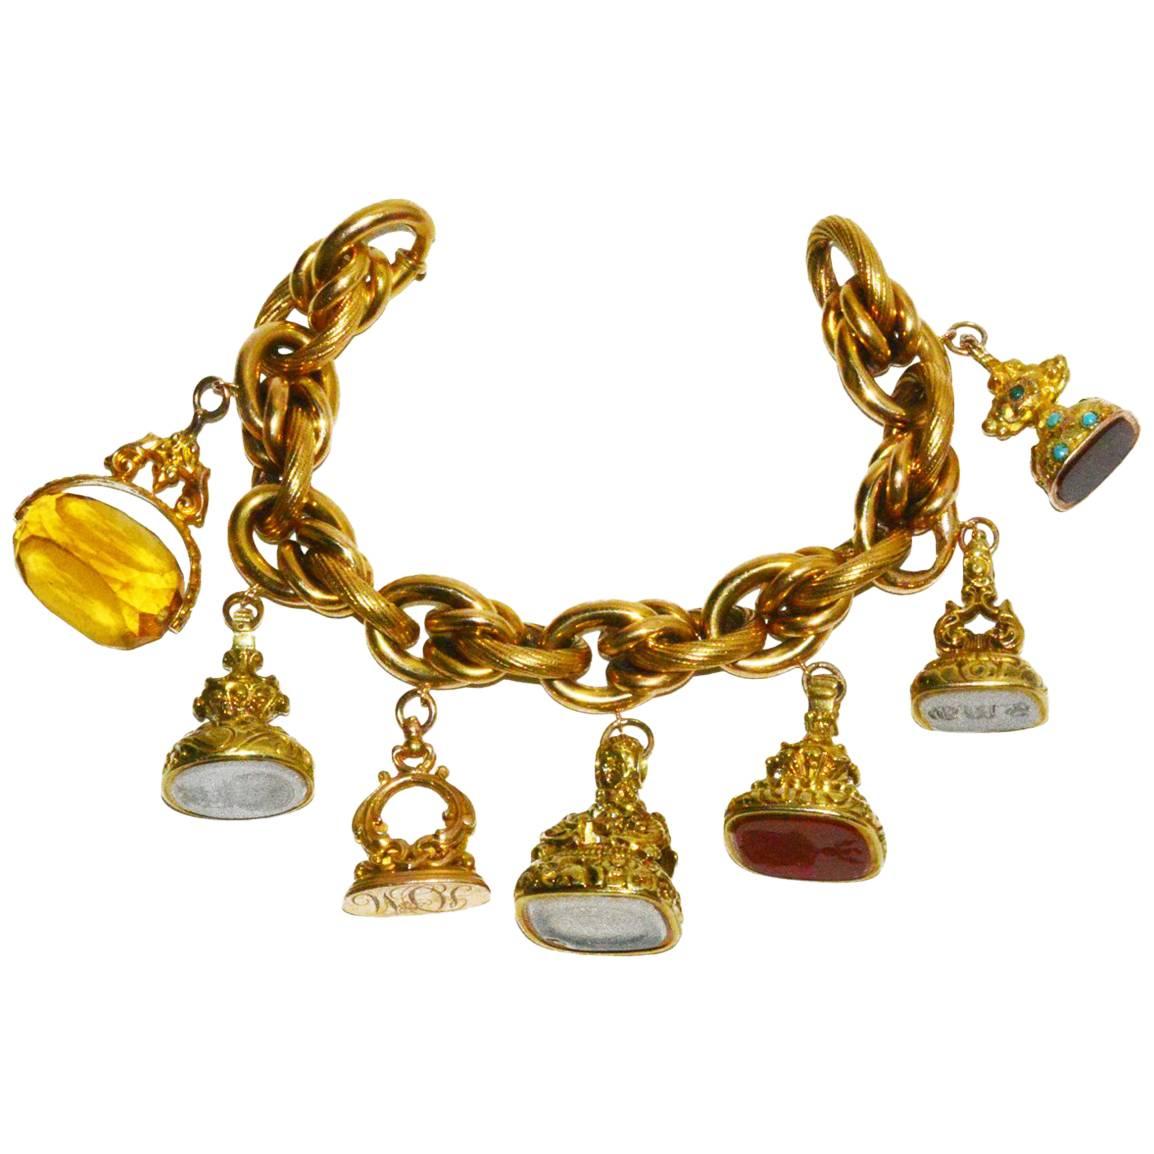 Antique Seal Collection Charm Bracelet